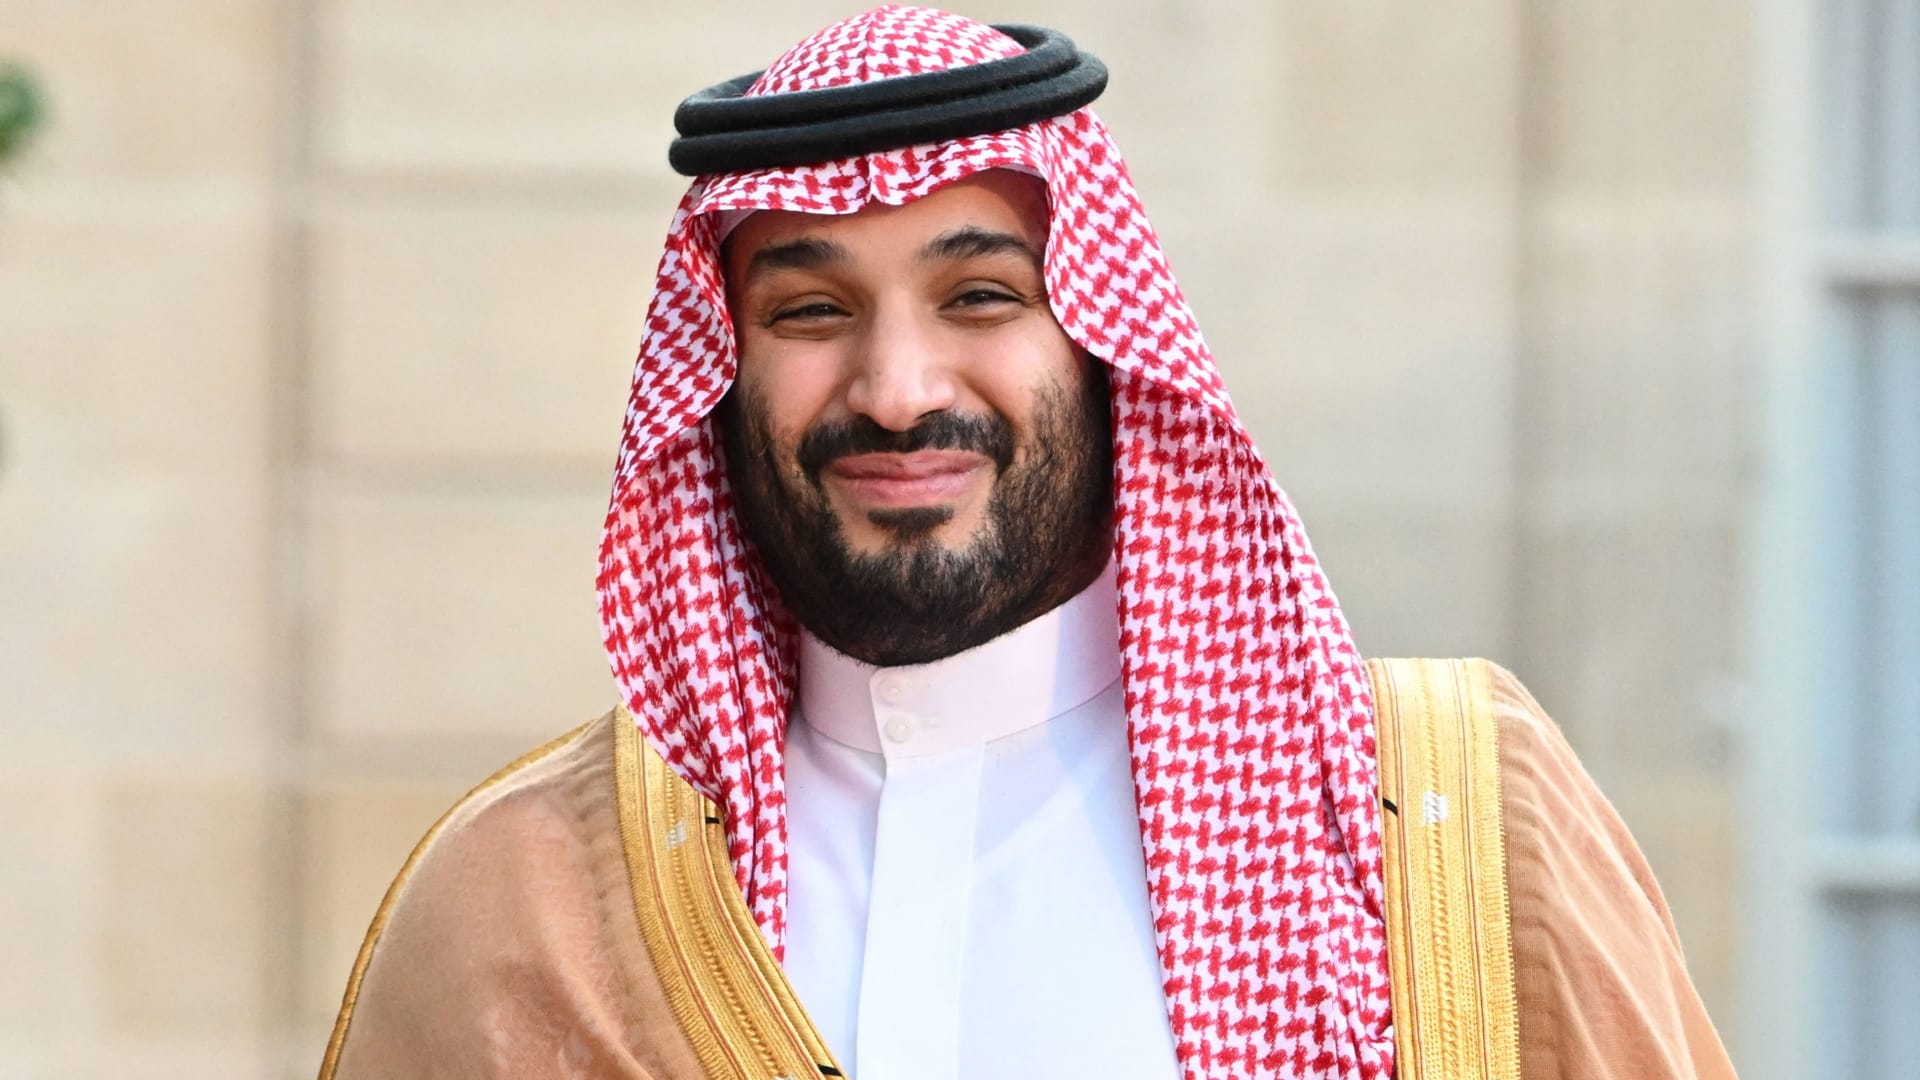 ولي العهد السعودي يتخلف عن حضور القمة العربية